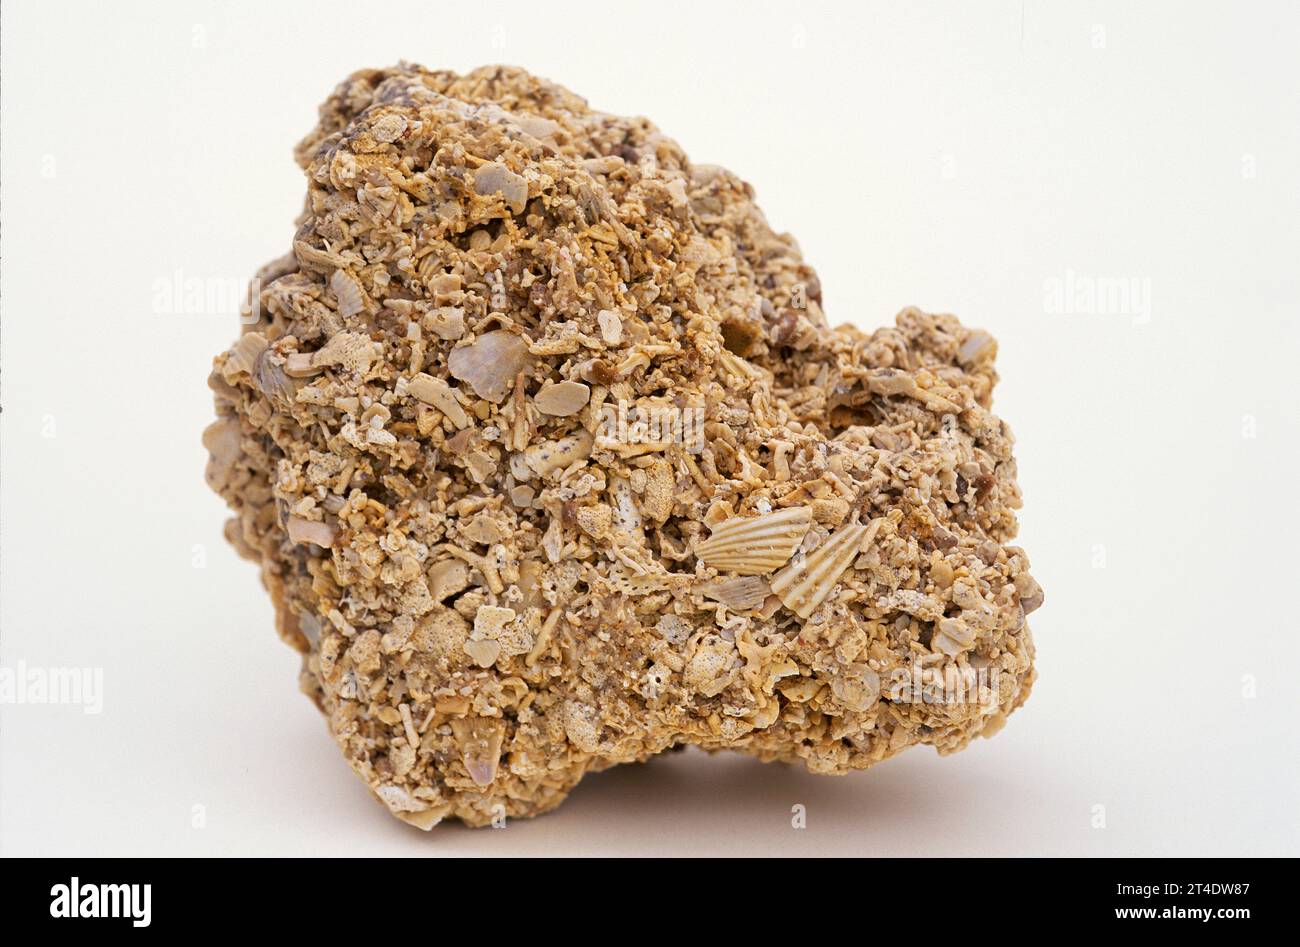 Le calcaire de Shelly est une roche sédimentaire composée de restes de squelette d'animaux marins. Exemple. Banque D'Images